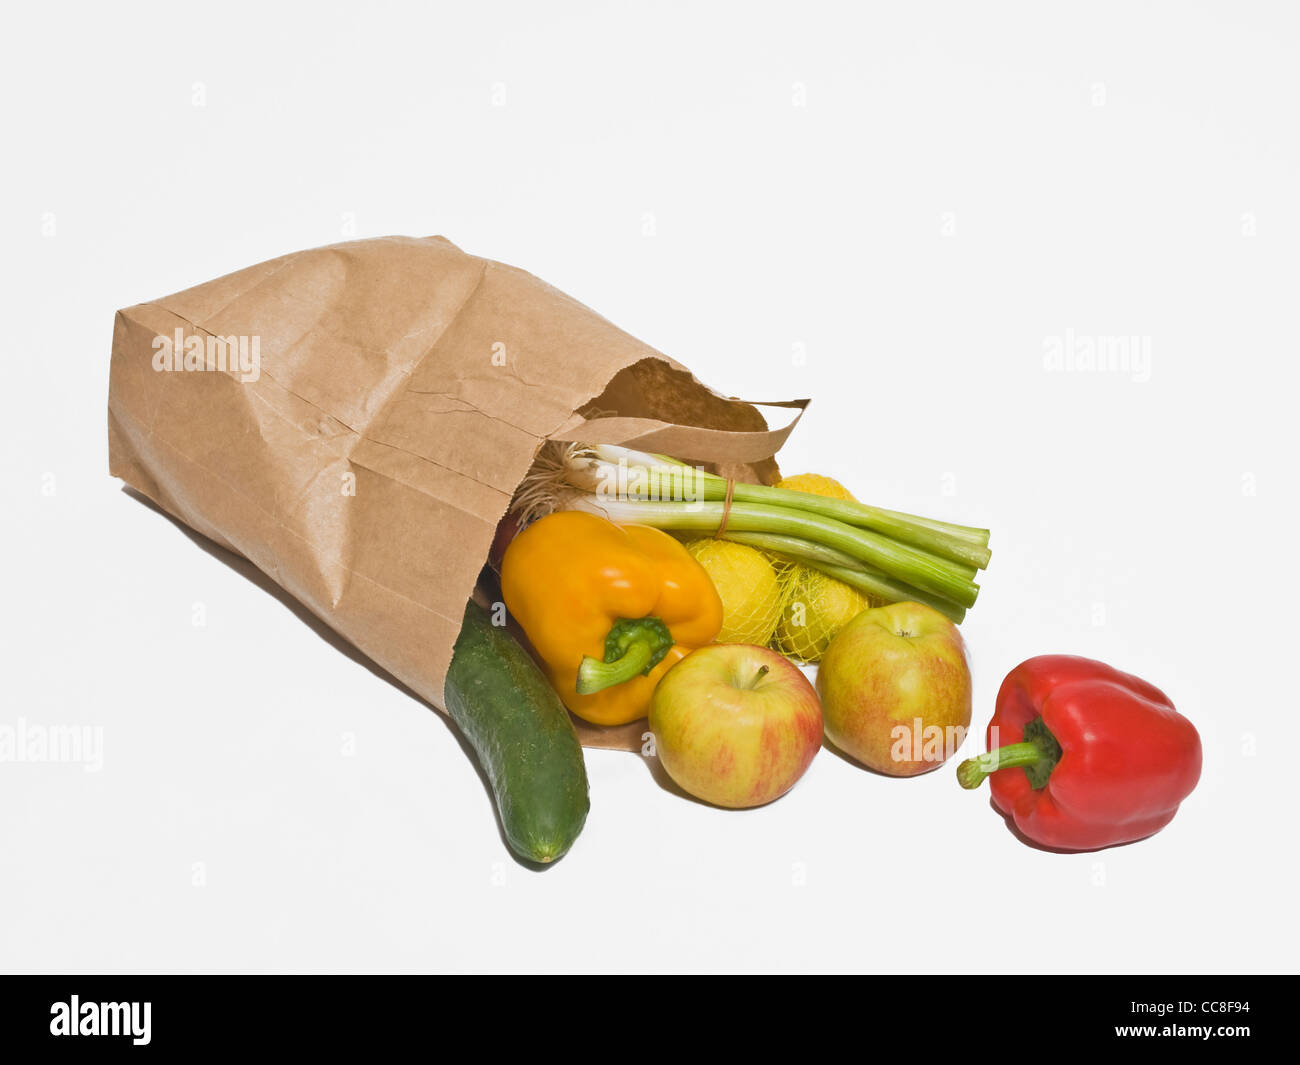 Eine umgefallene Papiertüte mit verschiedenem Obst und Gemüse | un tumbled sacchetto di carta con diversi frutti e verdure Foto Stock